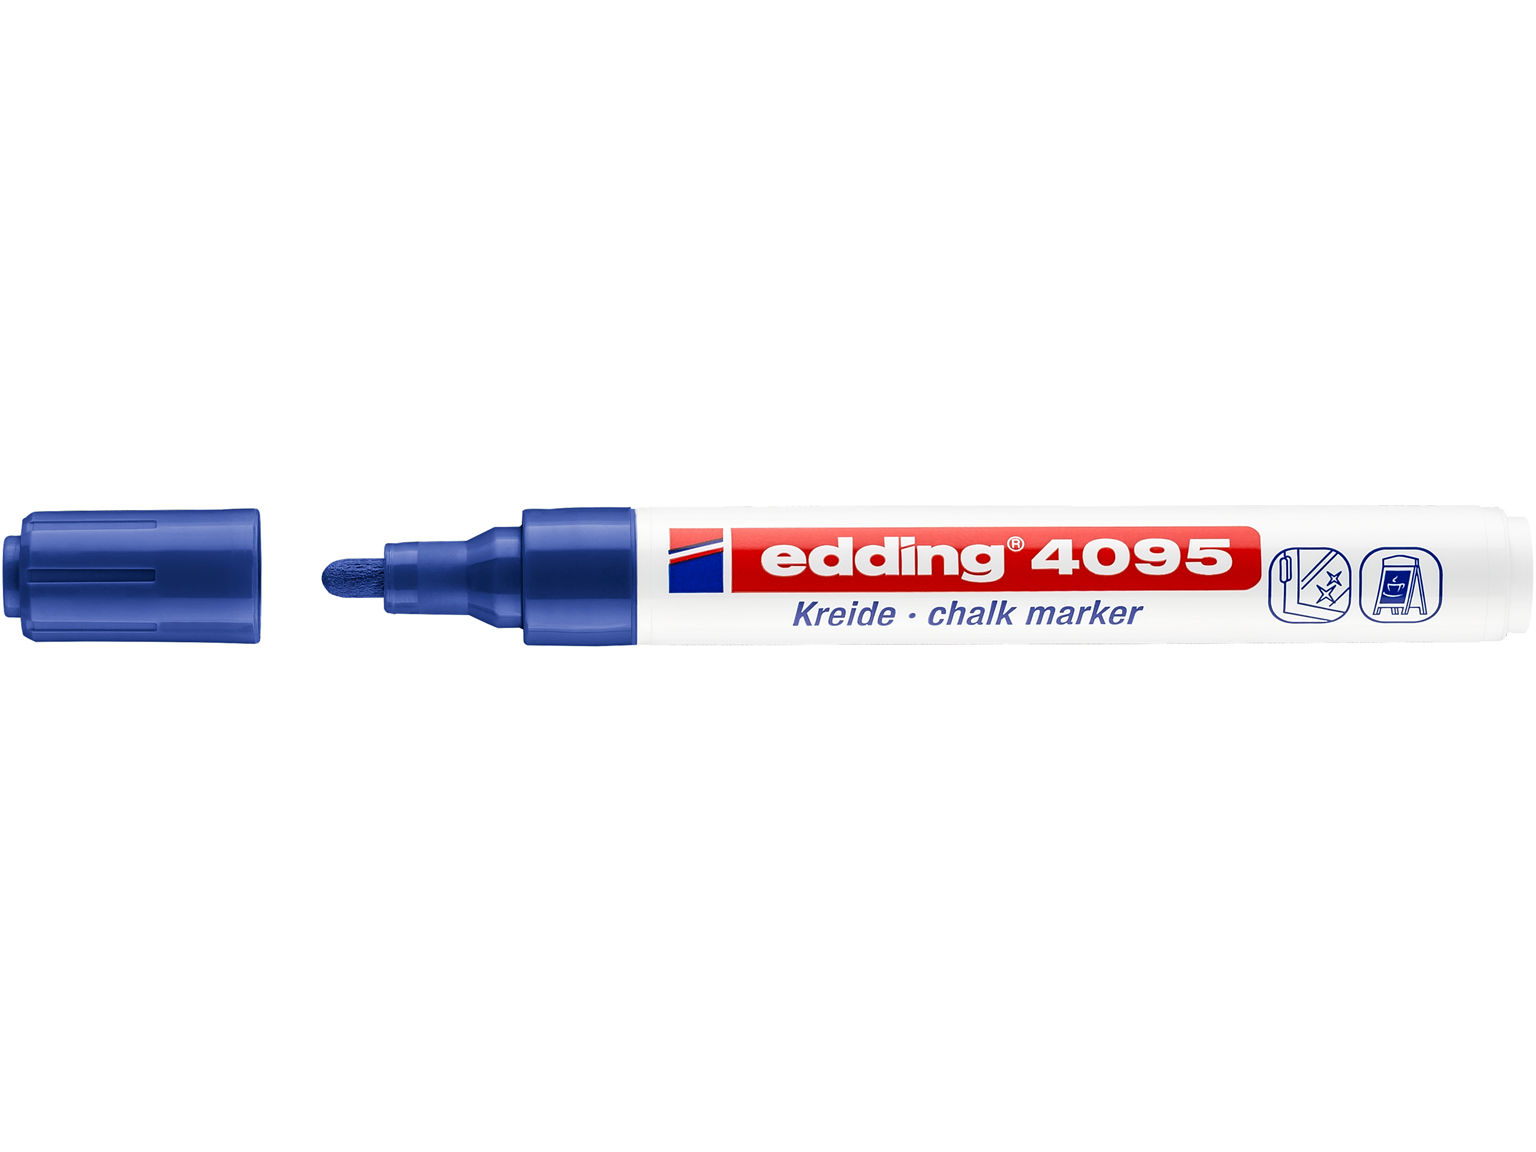 KREIDEMARKER EDDING  edding Kreidemarker 4095 blau